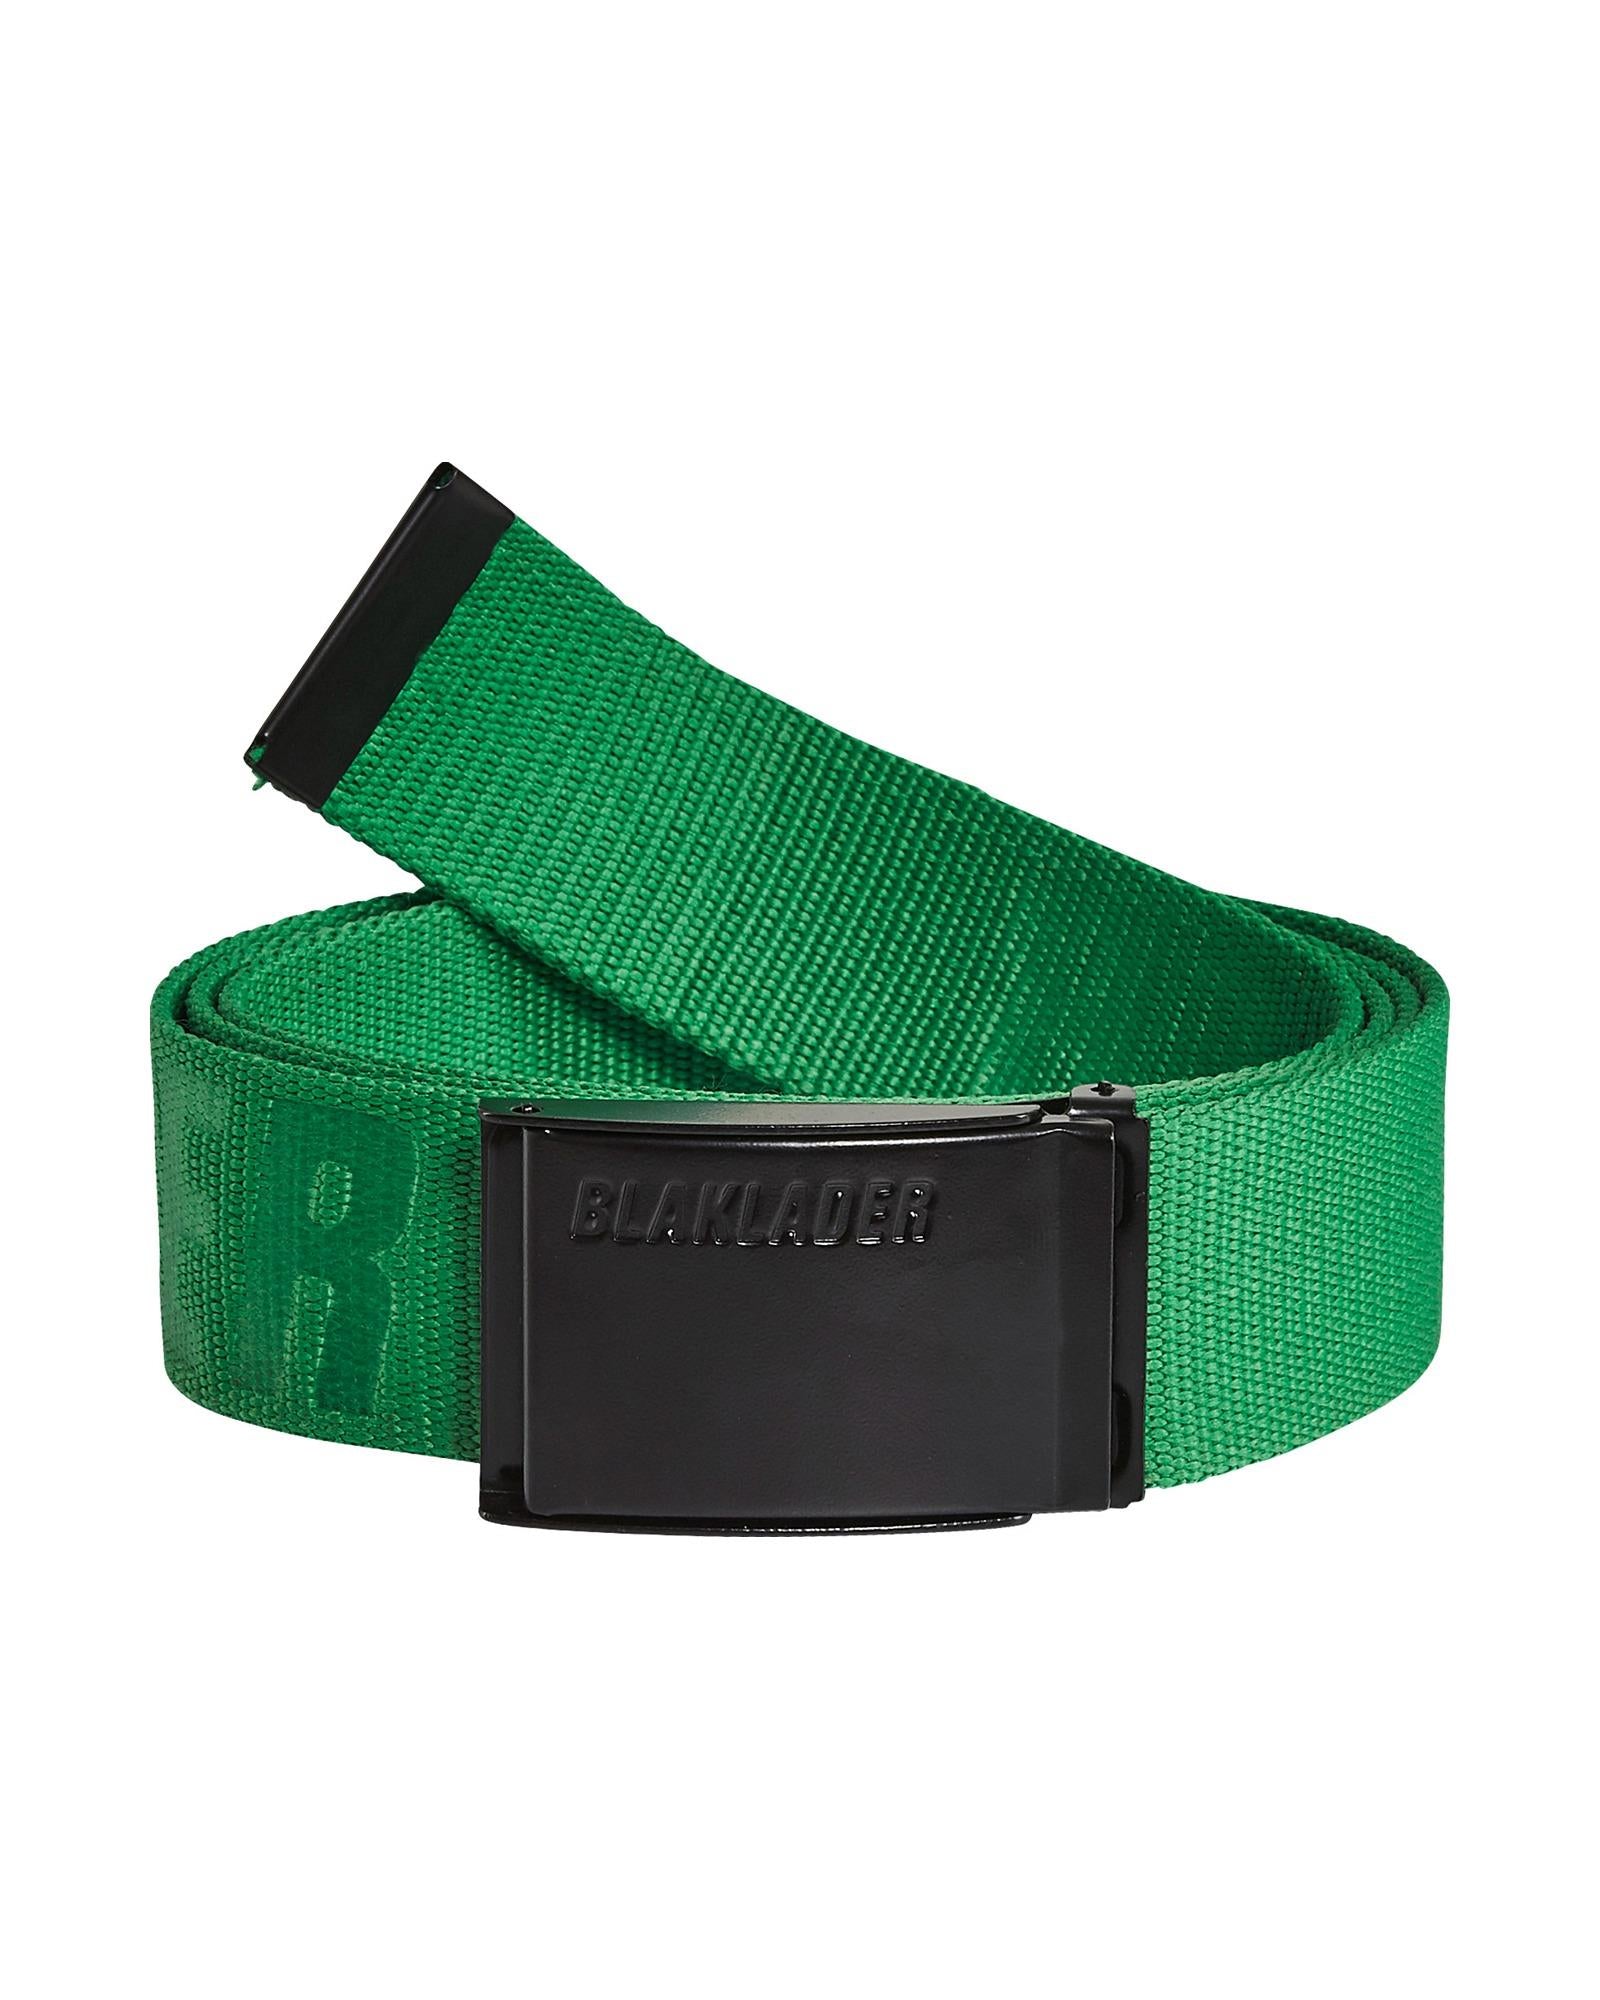 Blaklader green textile adjustable belt with metal buckle #4034